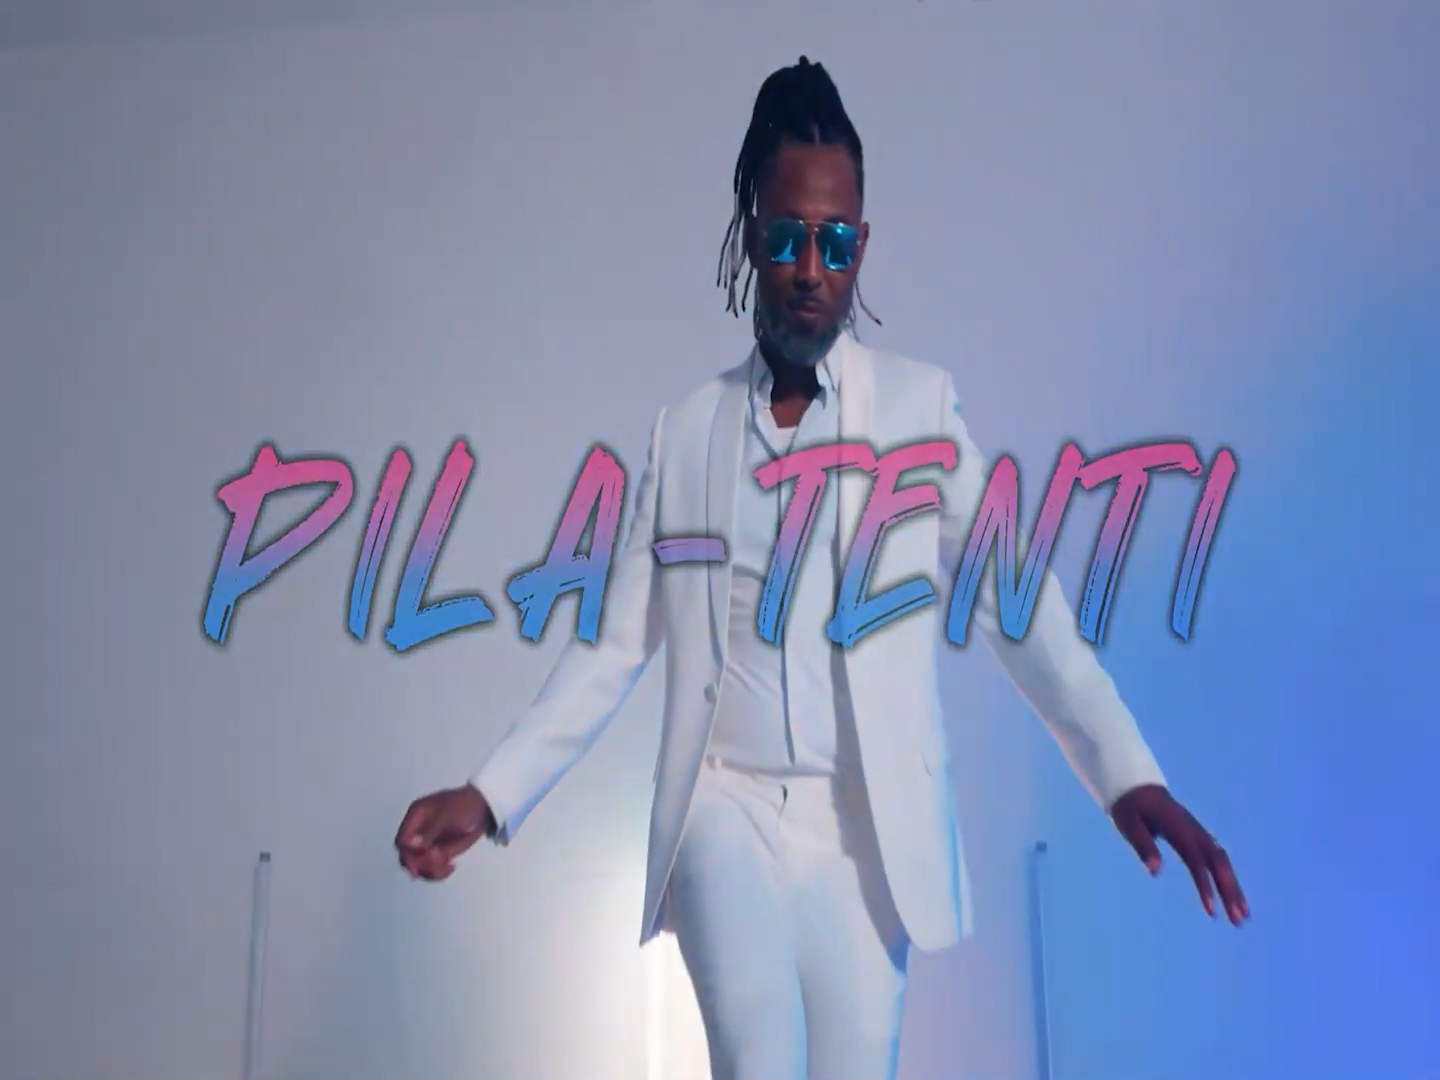 Música – Gilyto lança hoje, 5 de julho, single “Pila-Tenti”